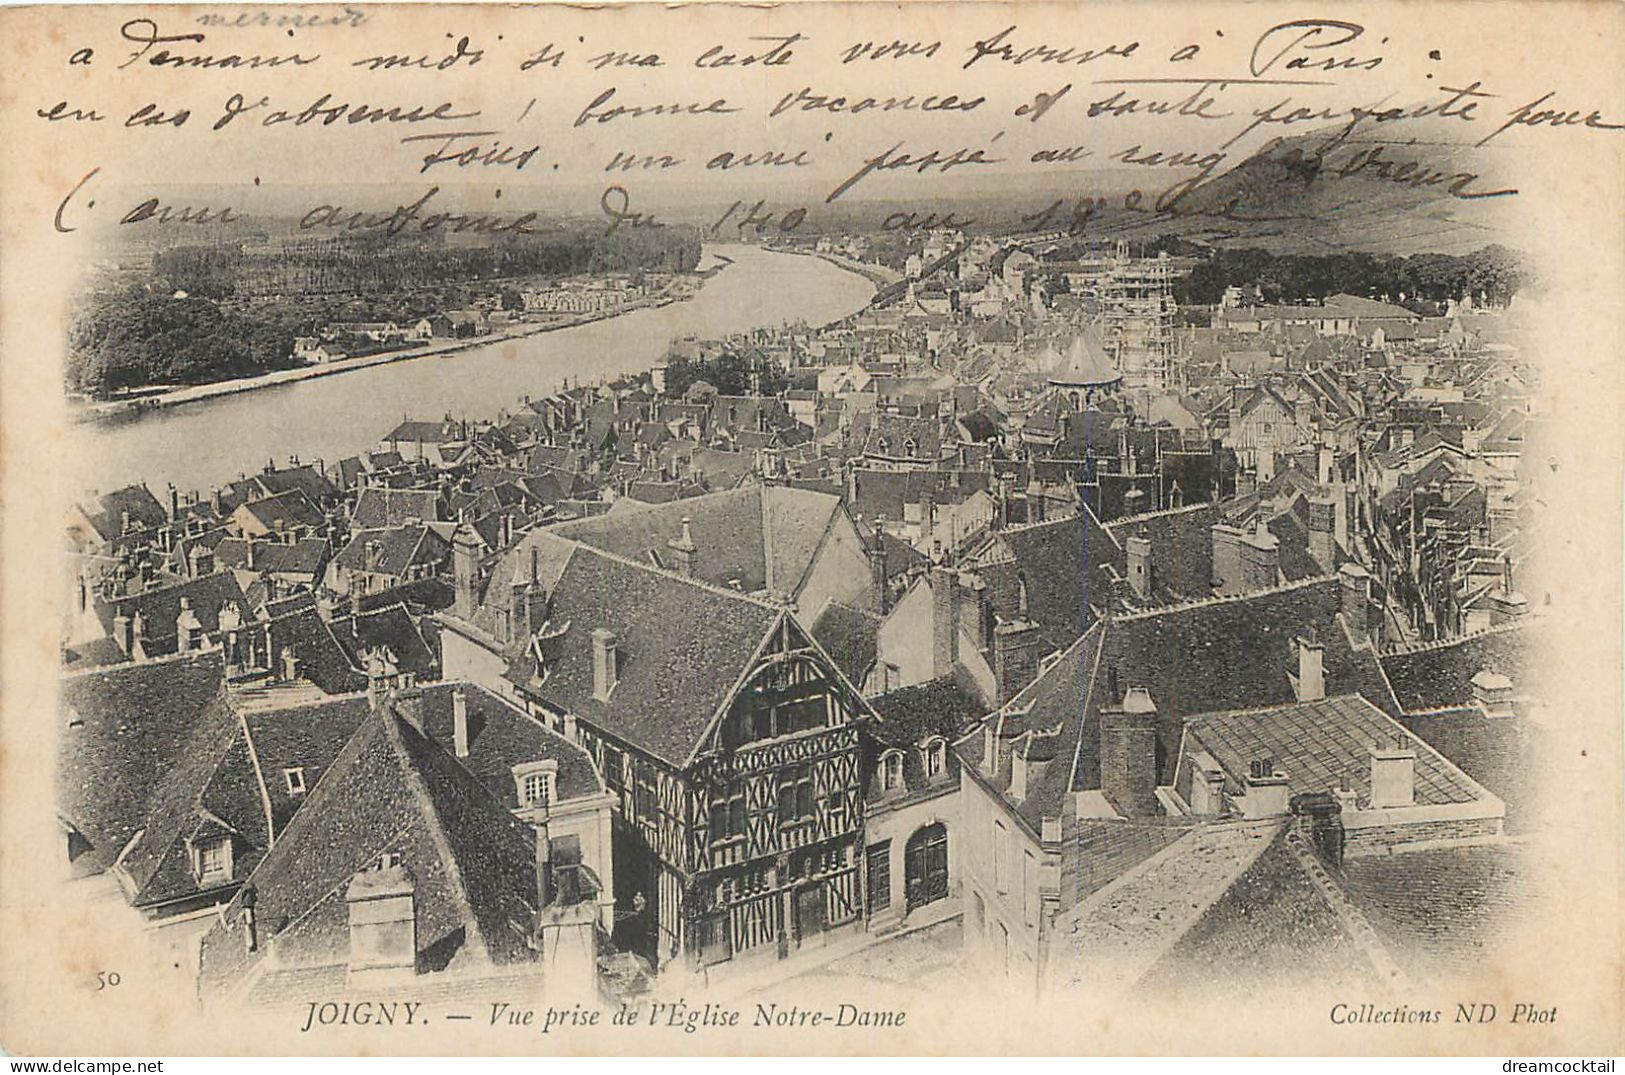 (S) Superbe LOT n°10 de 50 cartes postales anciennes France régionalisme